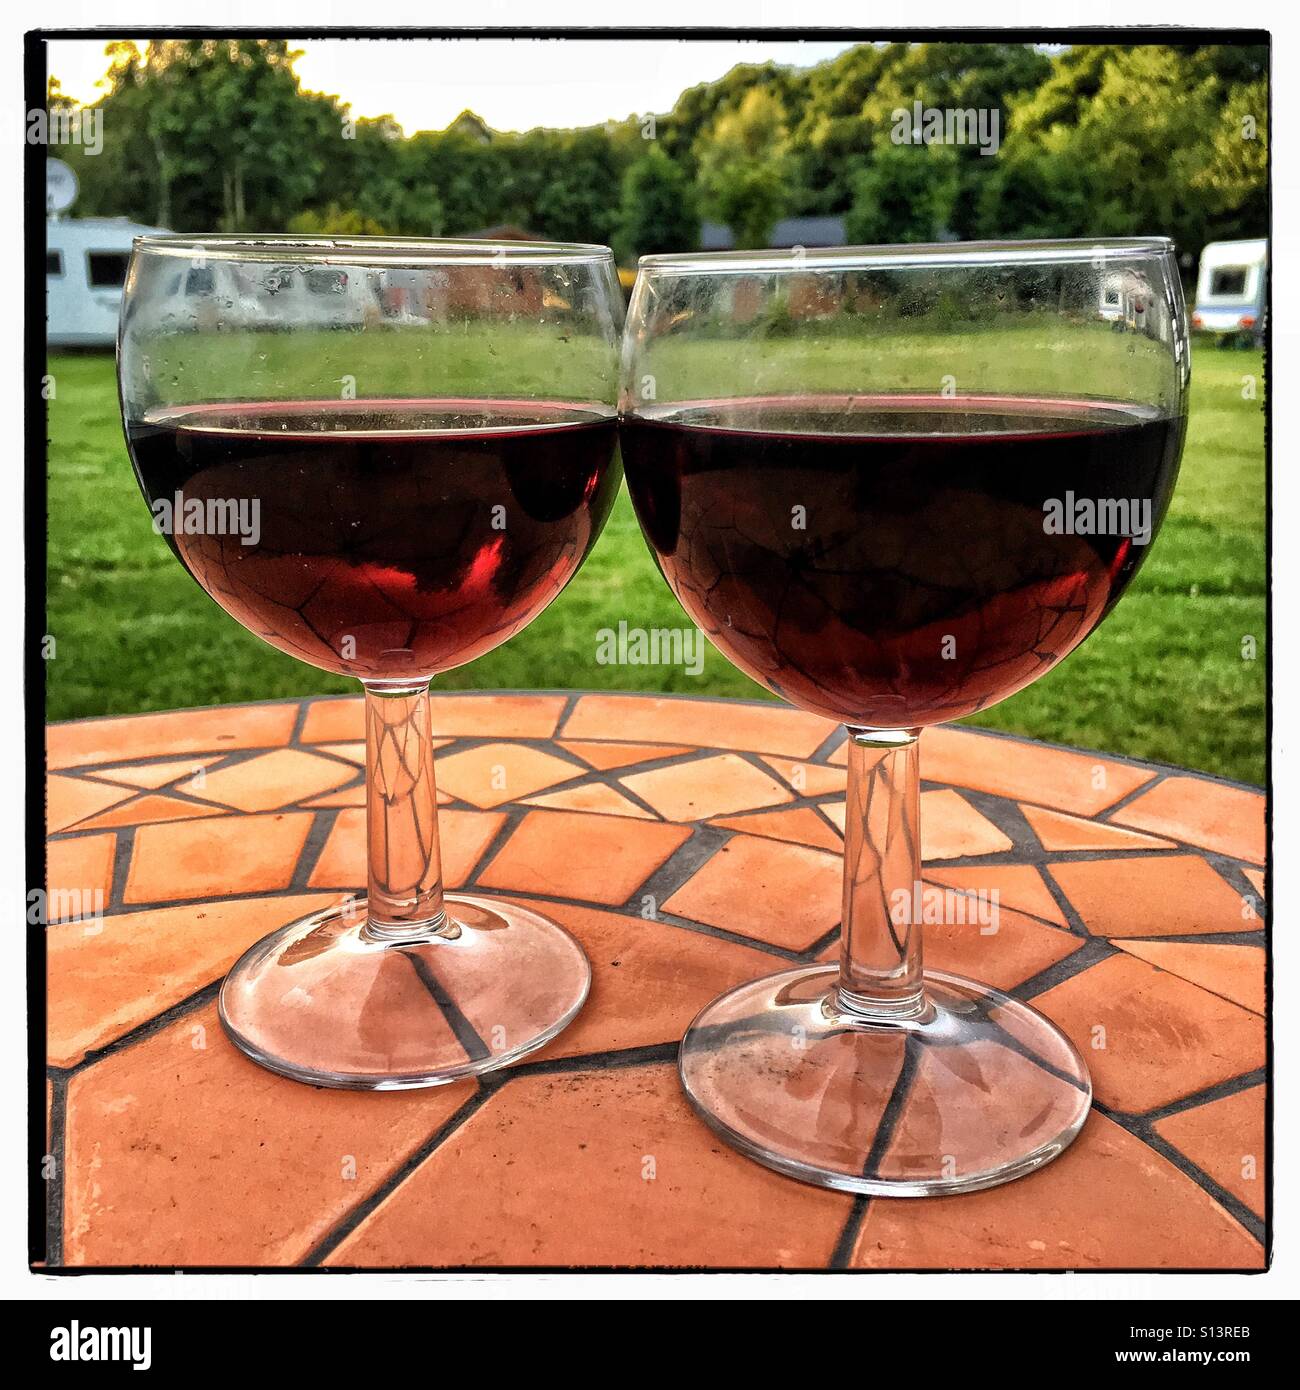 Rotwein in Runde Stielgläser auf gefliesten Tisch Stockfoto